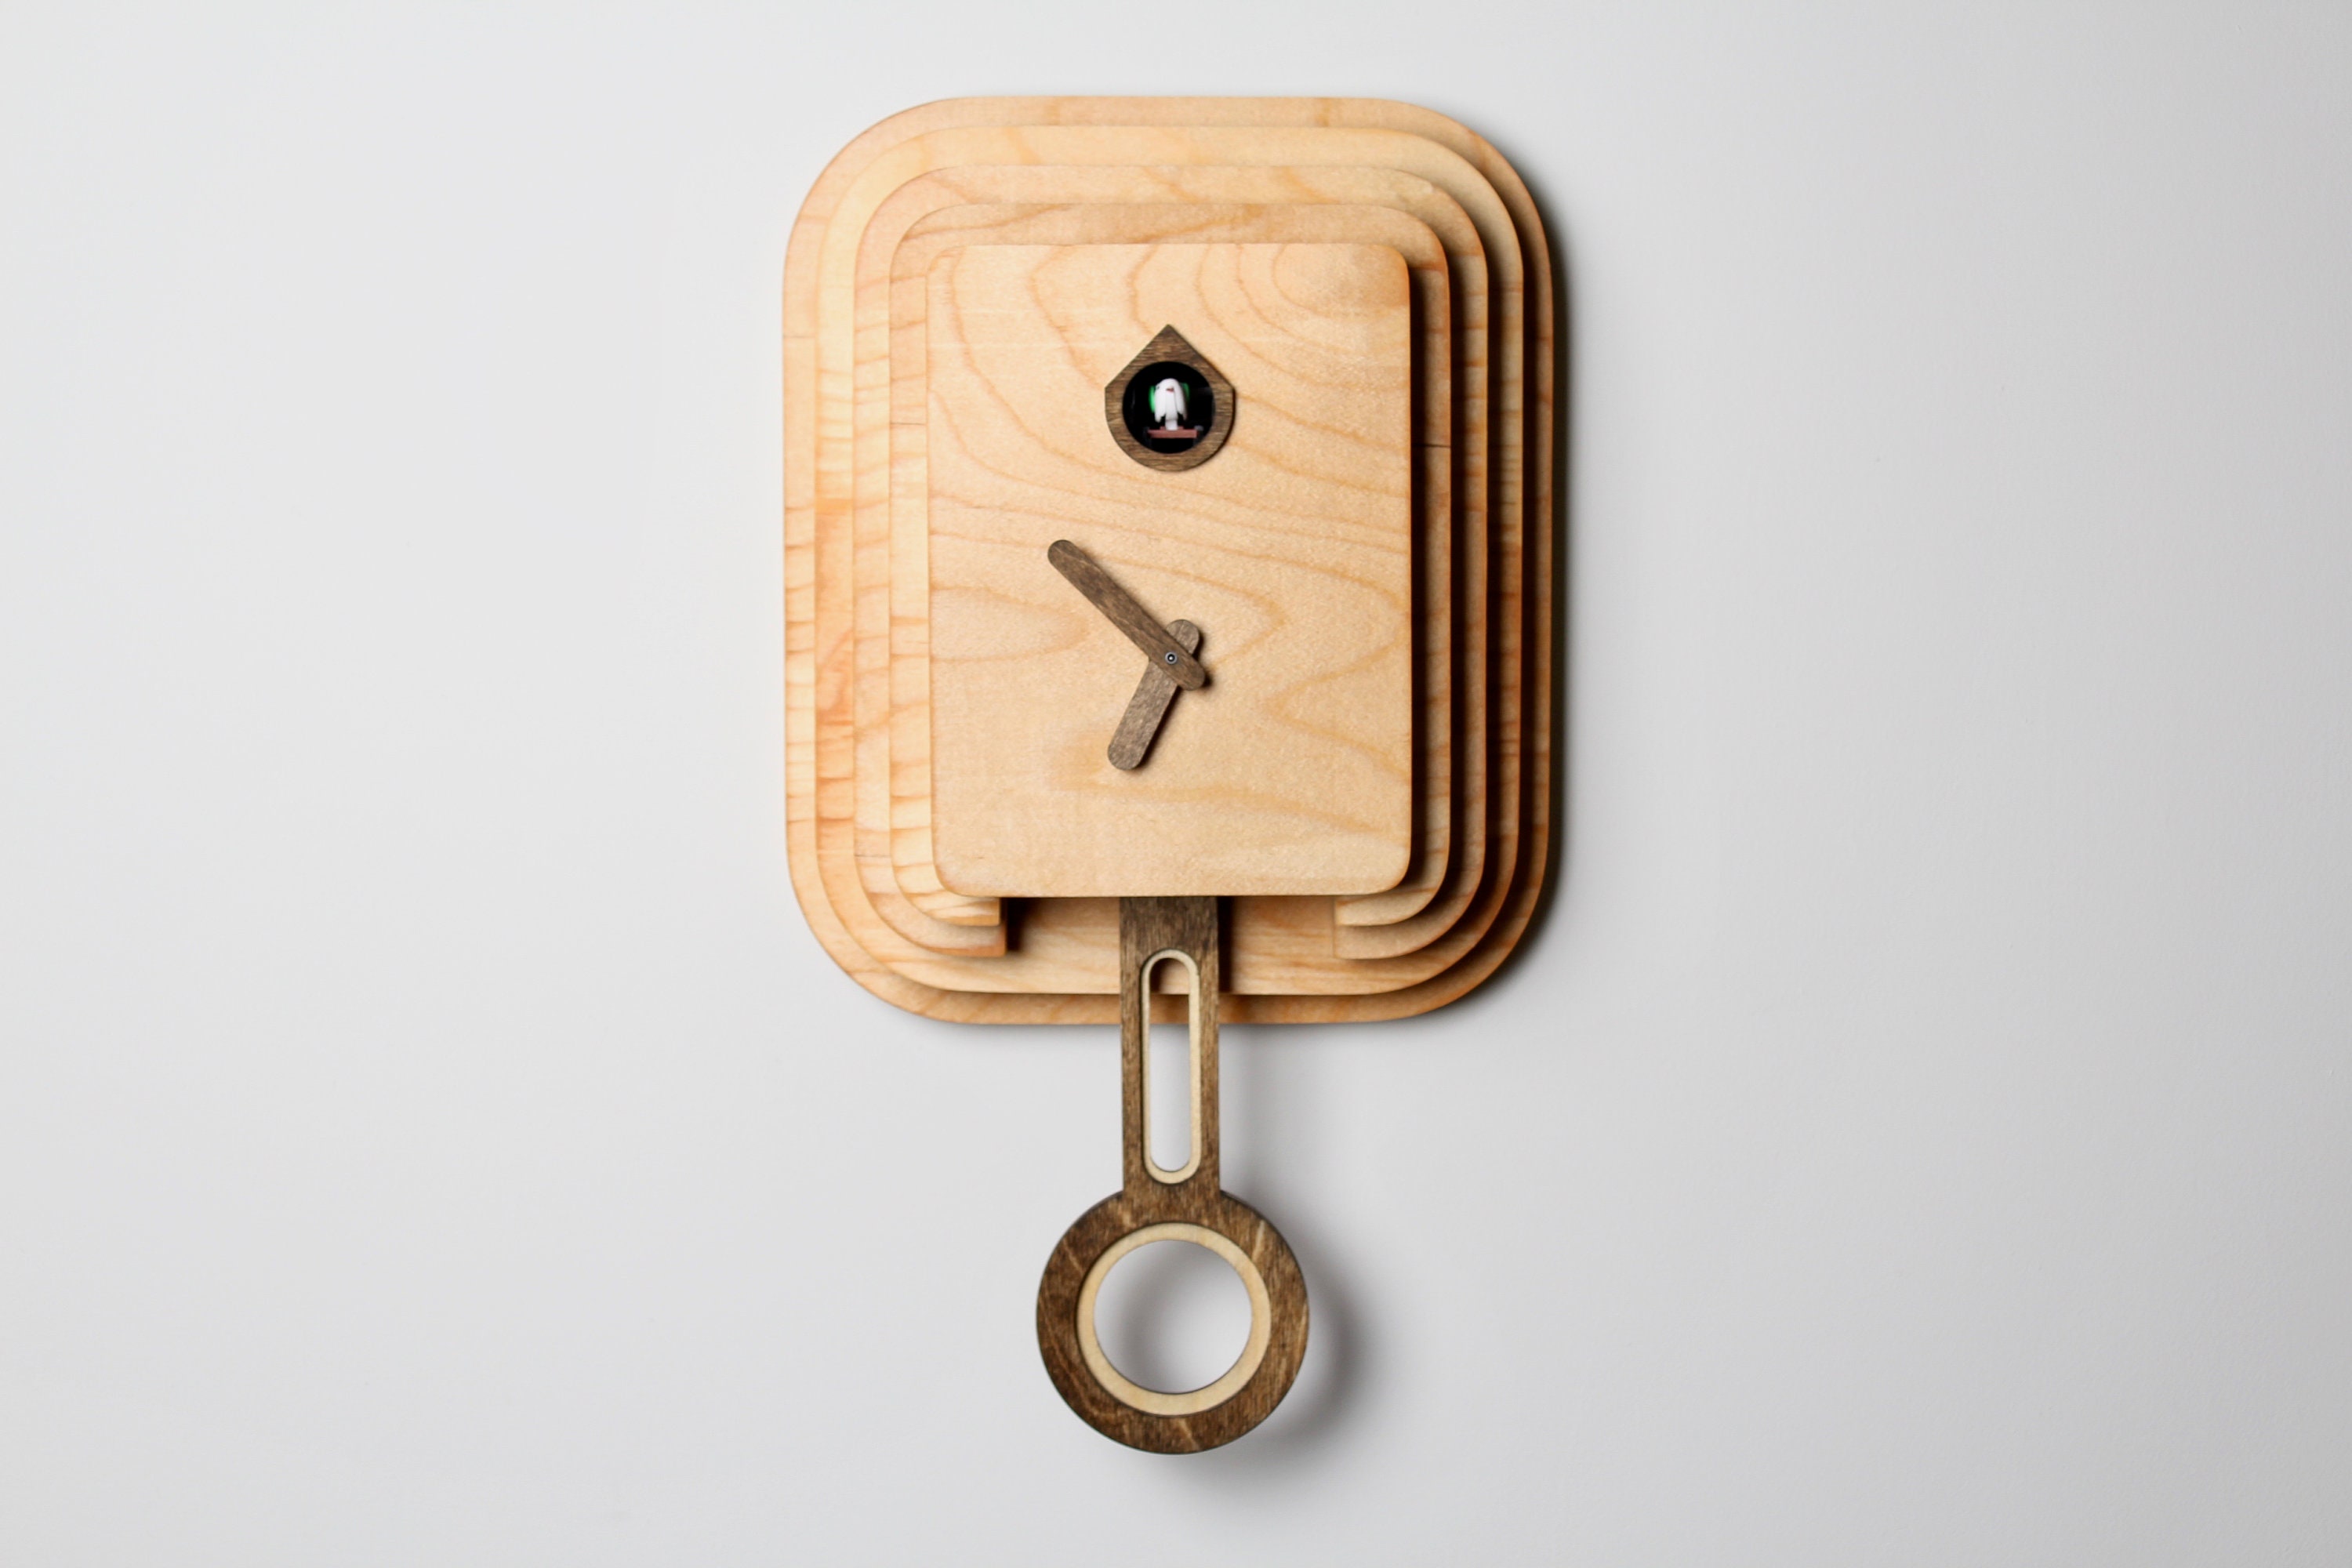 Reloj de cuco alemán grande - Chalet de molino de balancín con movimiento  de cuarzo con balancín móvil - Reloj de la Selva Negra